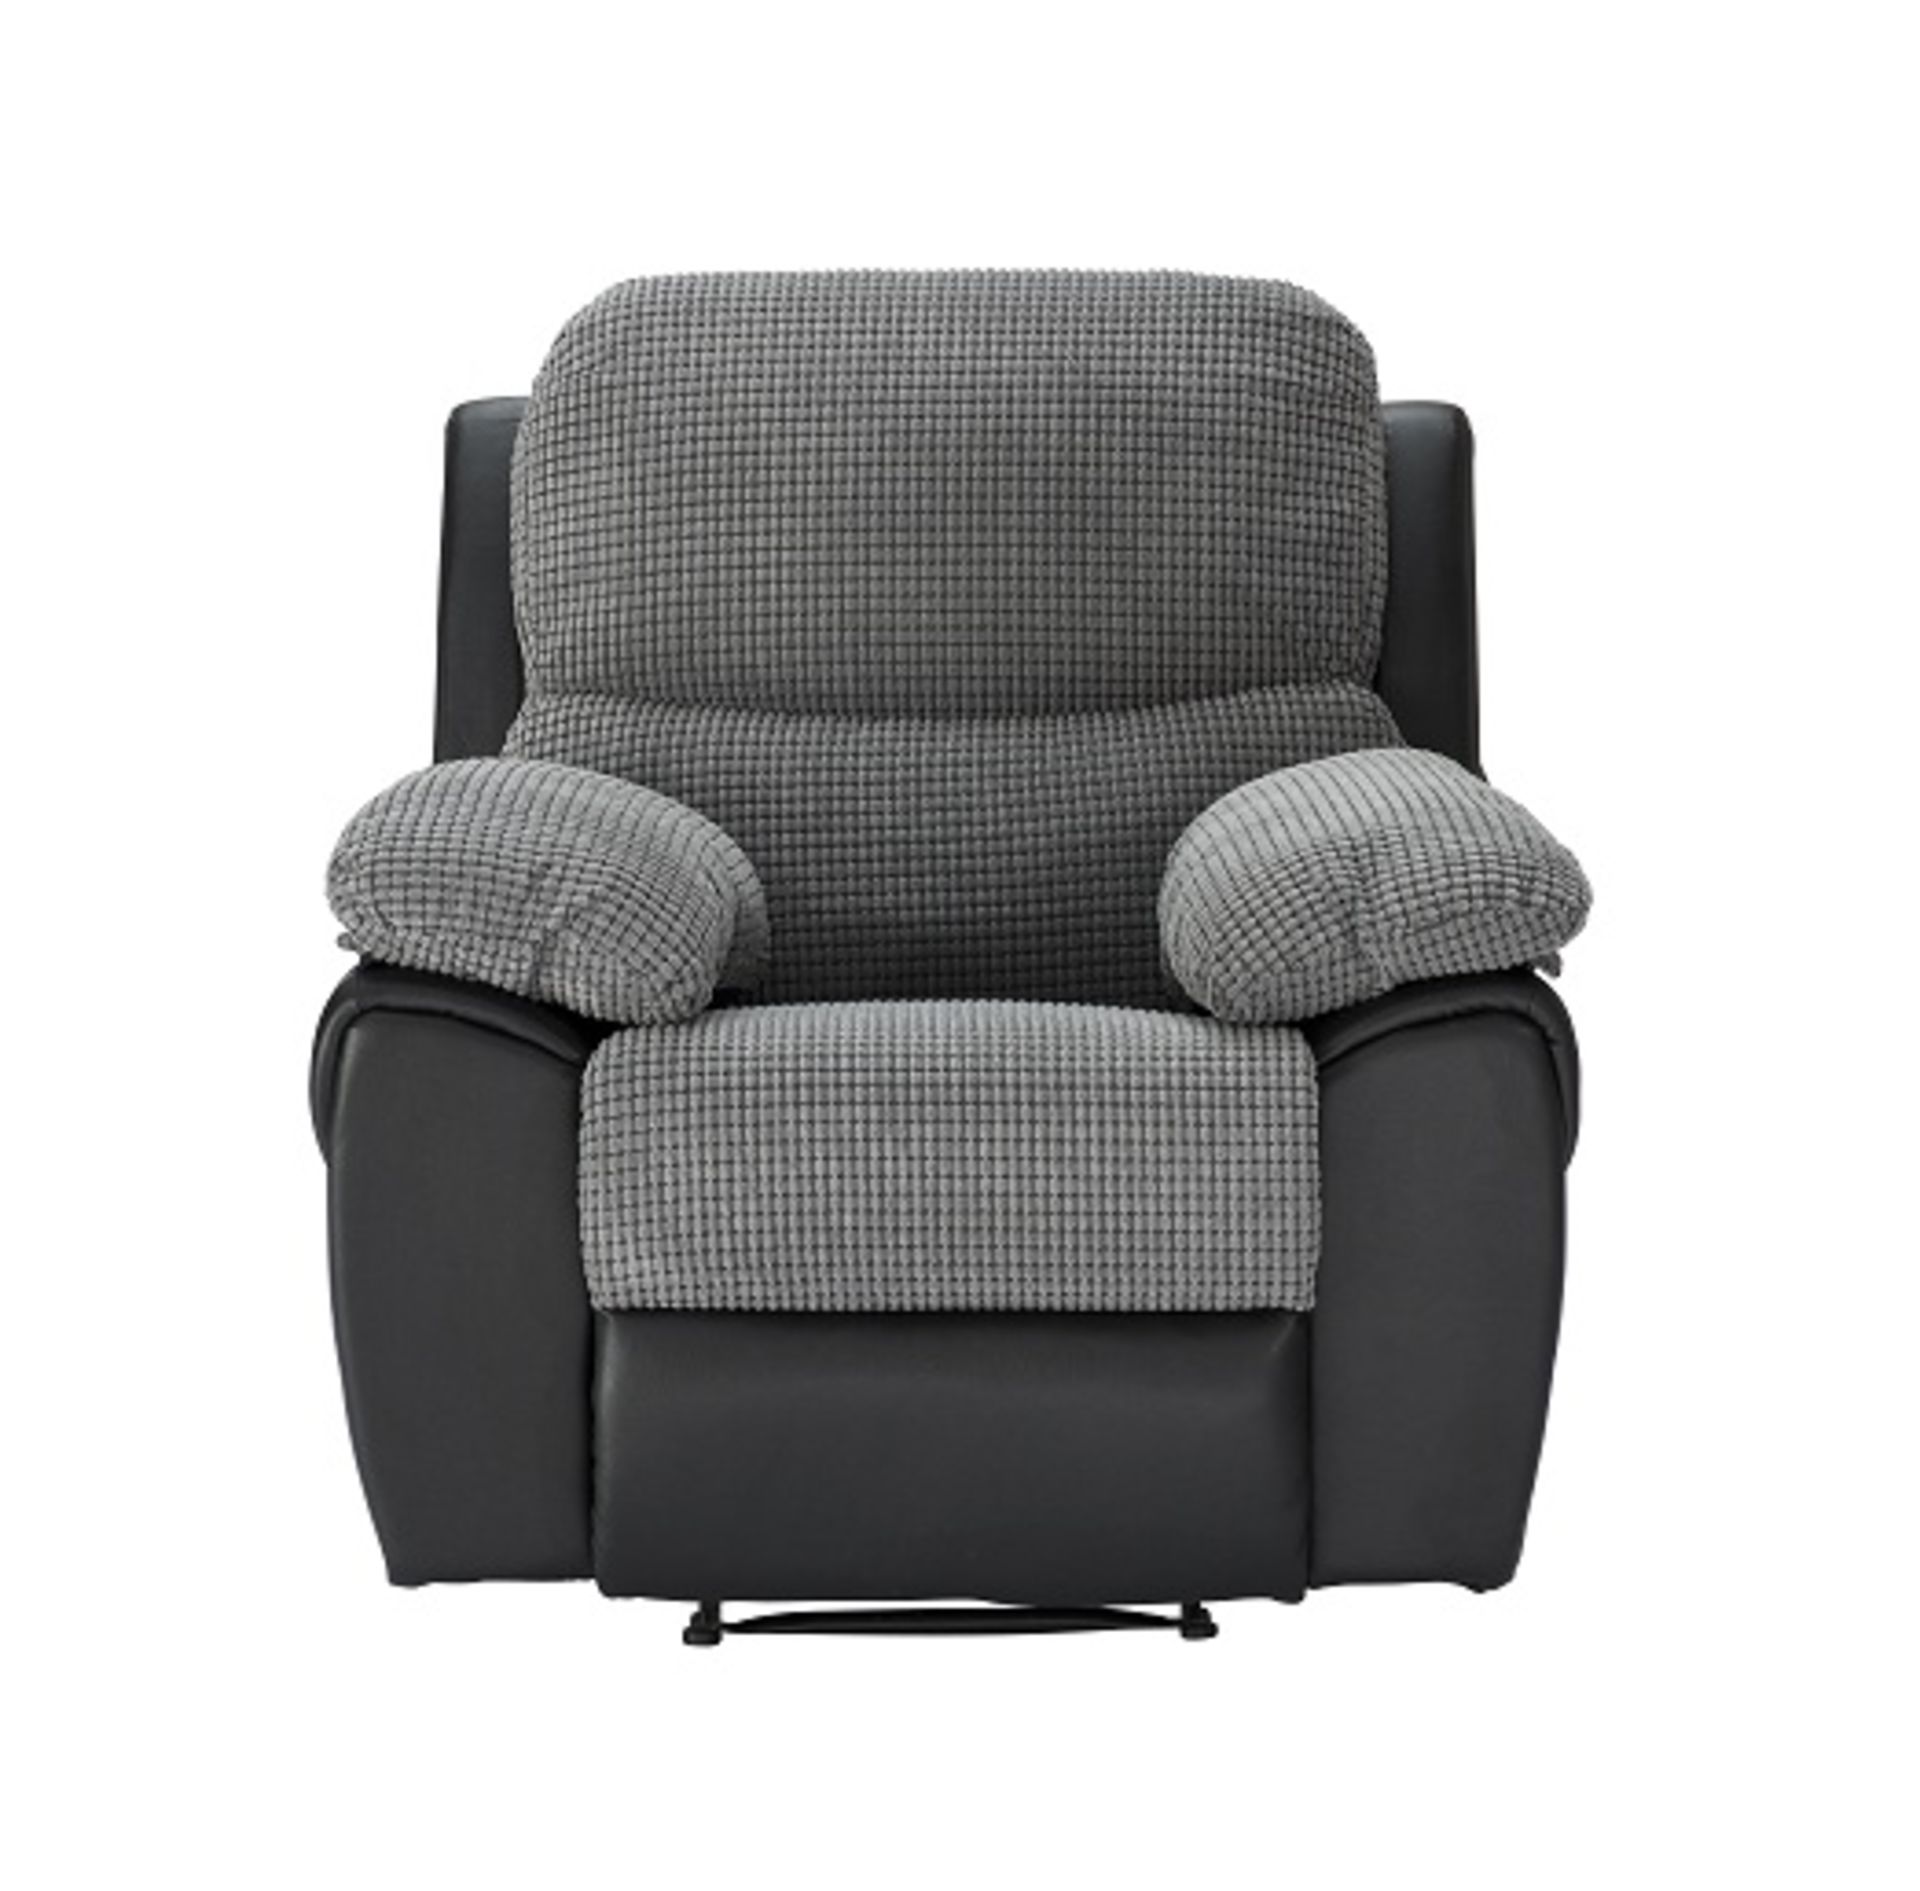 Henley fabric recliner chair